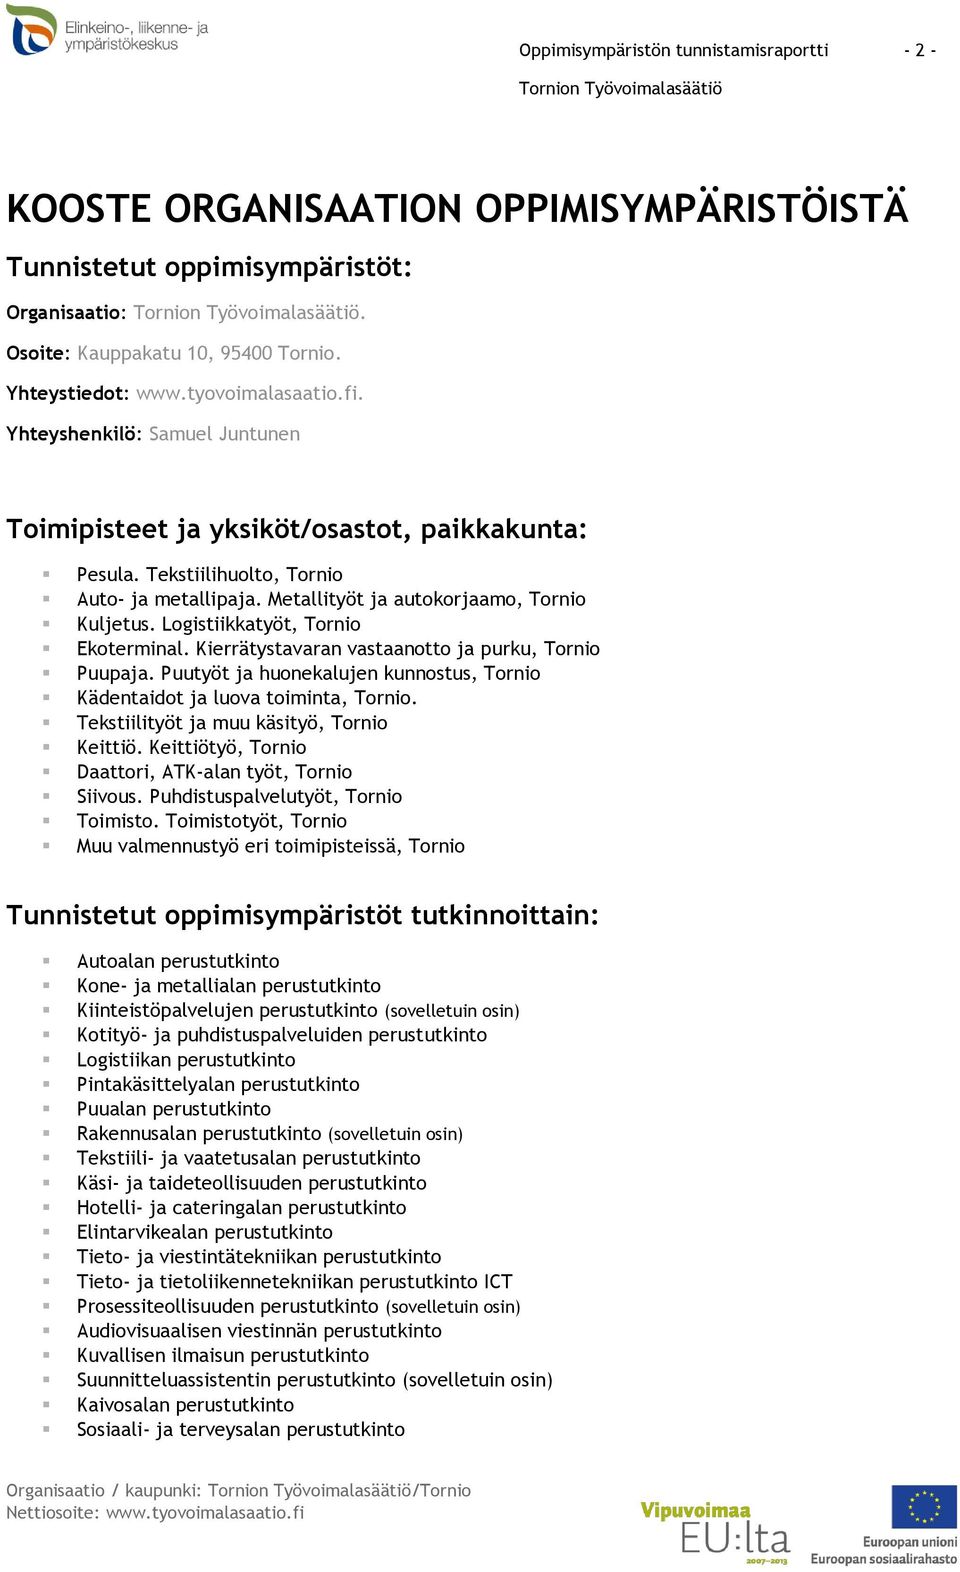 Logistiikkatyöt, Tornio Ekoterminal. Kierrätystavaran vastaanotto ja purku, Tornio Puupaja. Puutyöt ja huonekalujen kunnostus, Tornio Kädentaidot ja luova toiminta, Tornio.